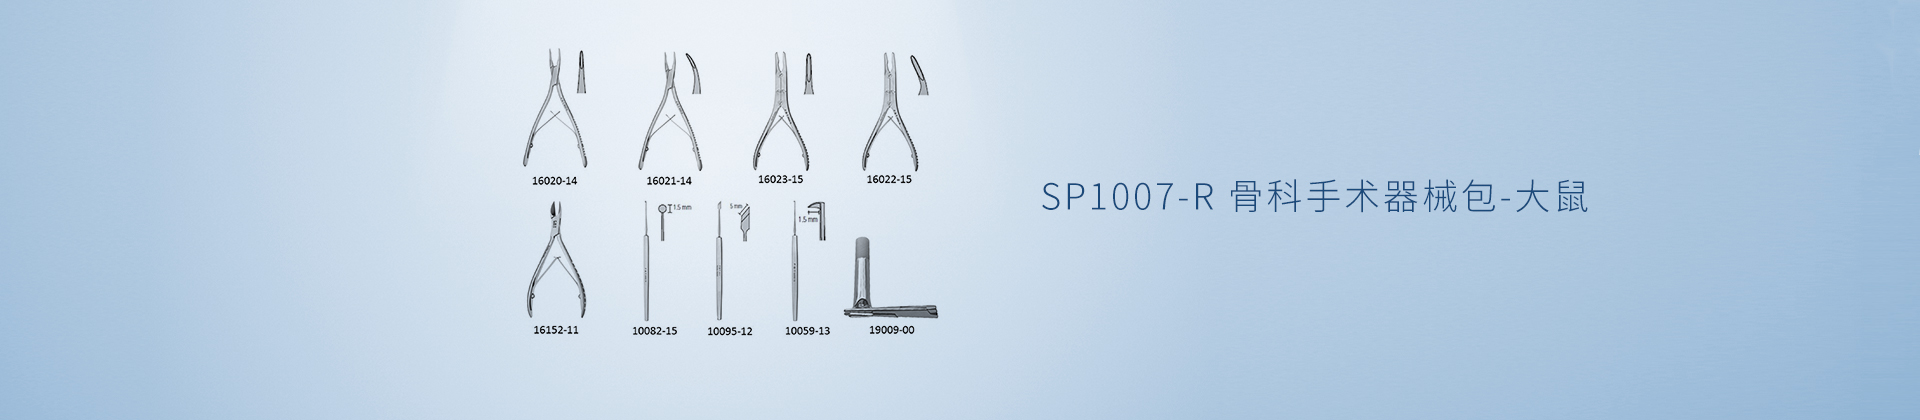 SP1007-R 骨科手术器械包-大鼠